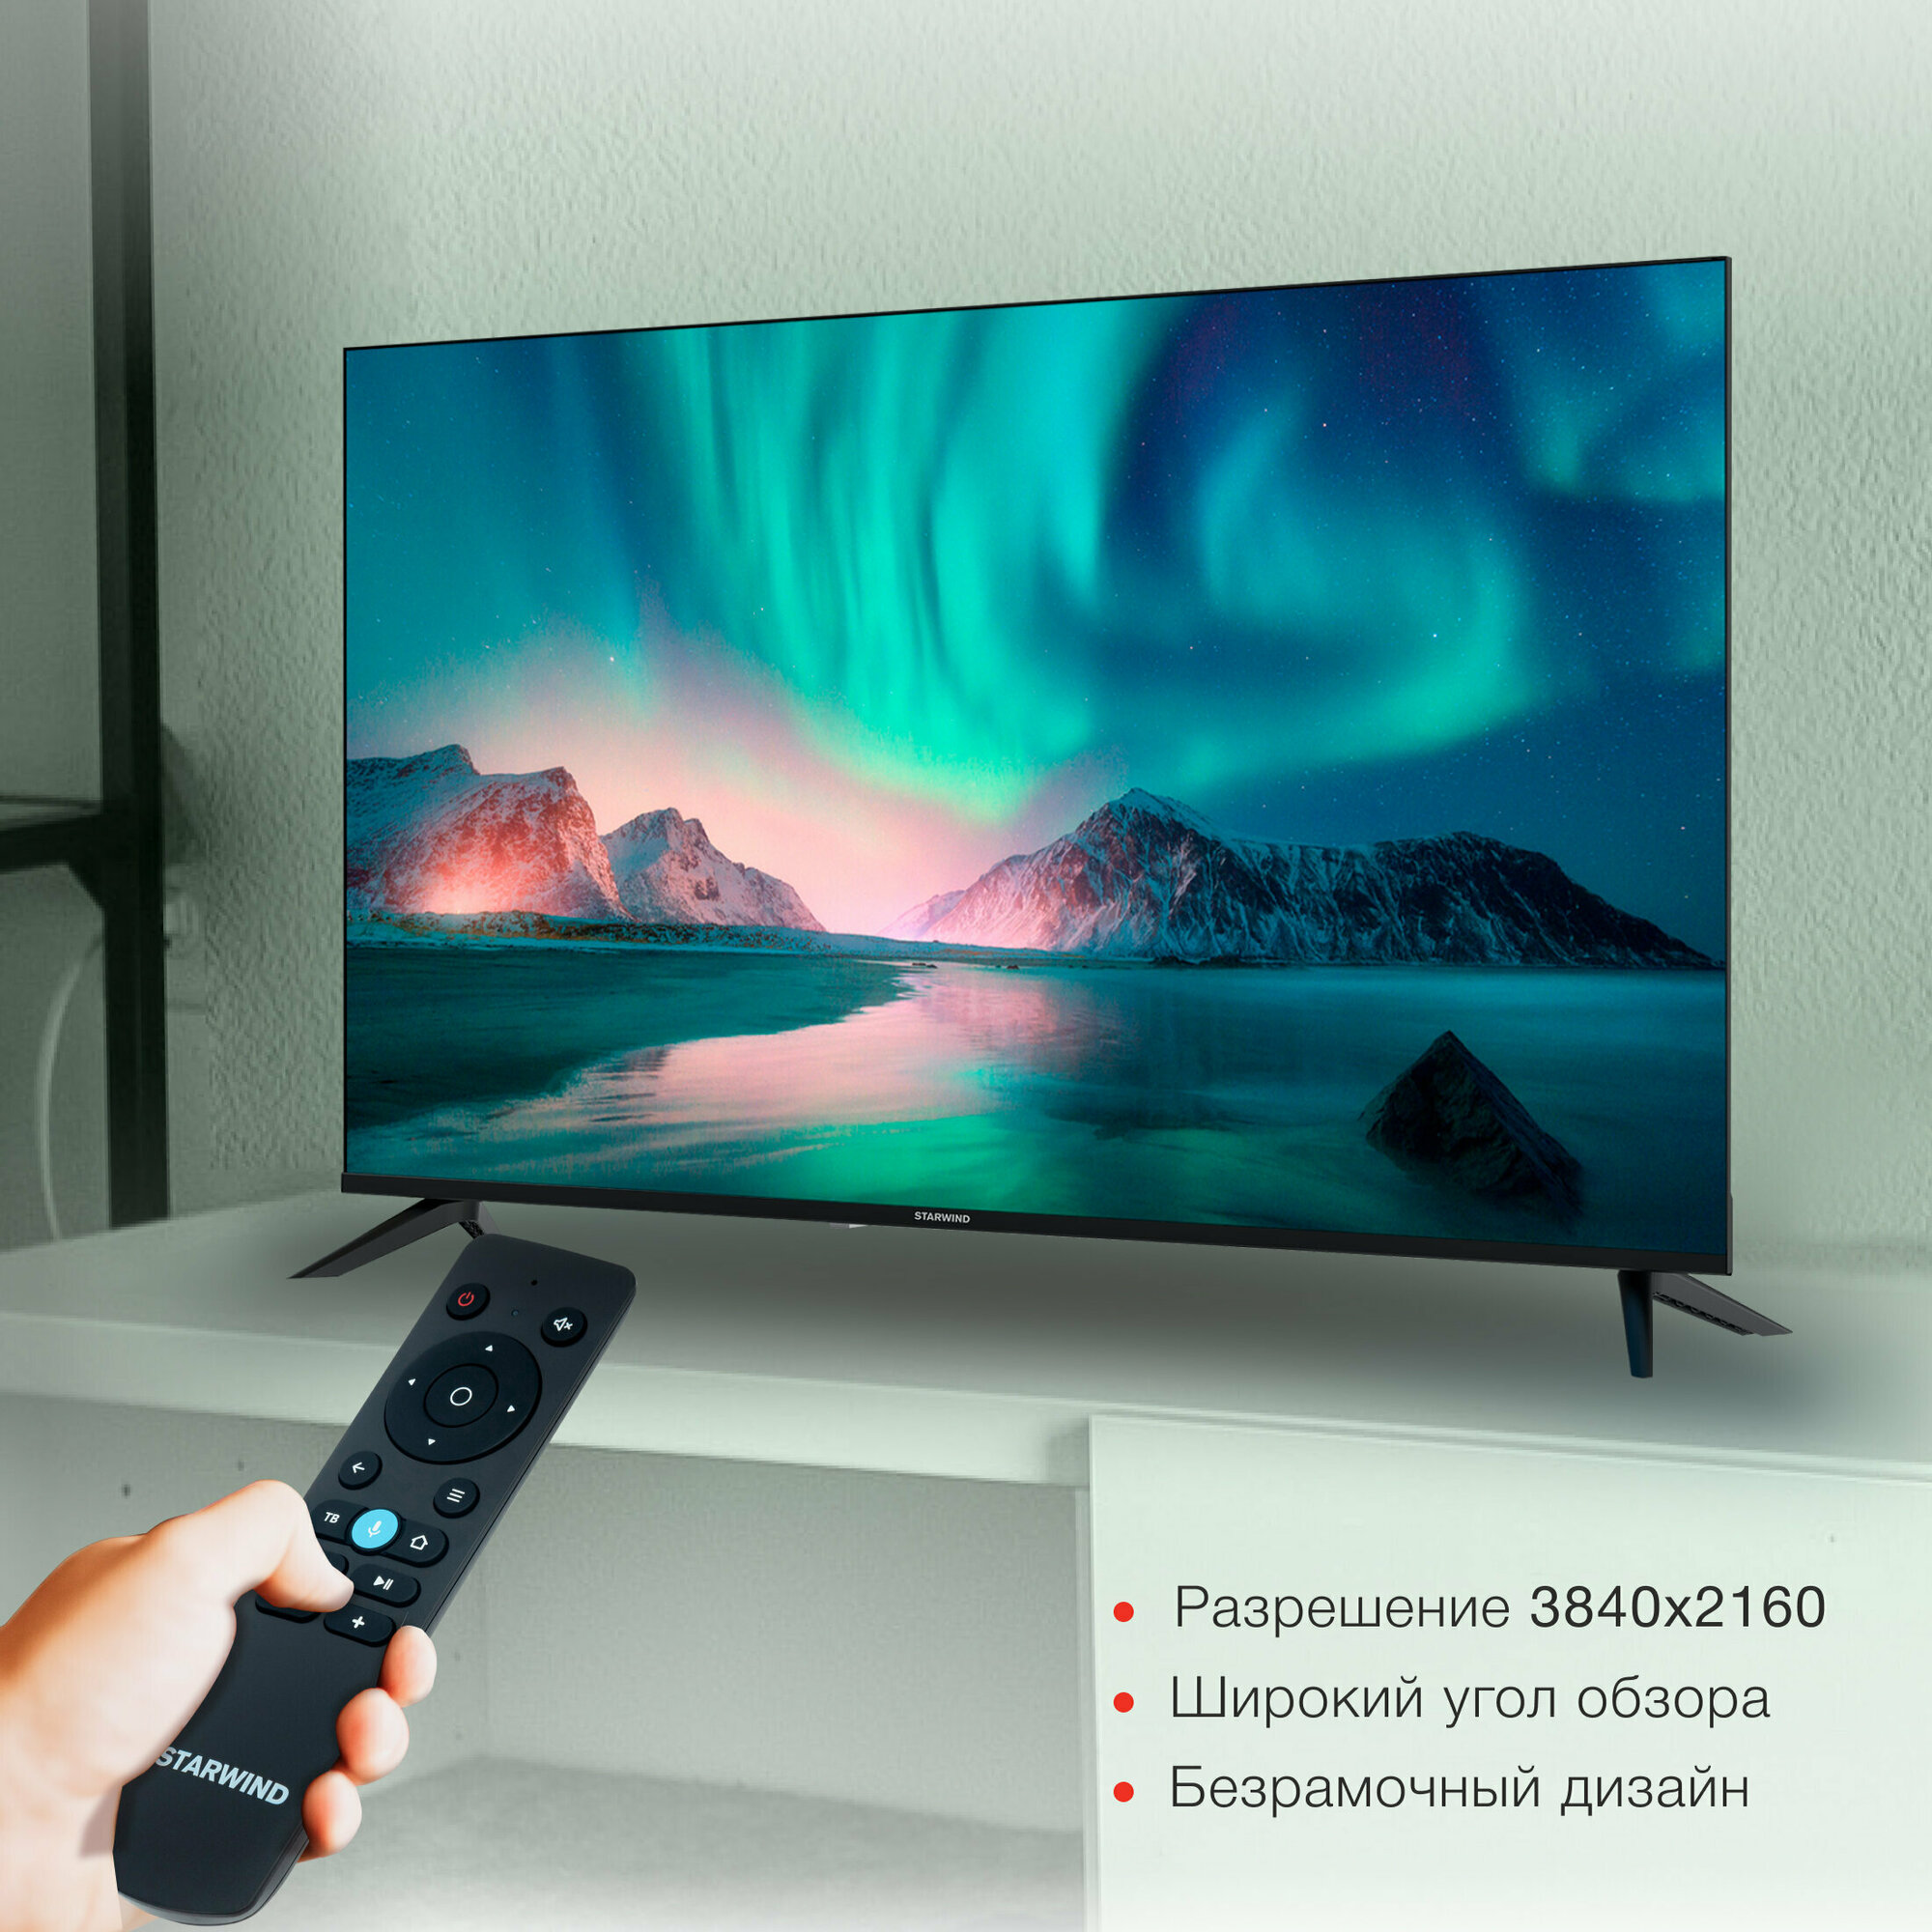 Телевизор Starwind Яндекс.ТВ SW-LED50UG403, 50", LED, 4K Ultra HD, Яндекс.ТВ, черный - фото №7